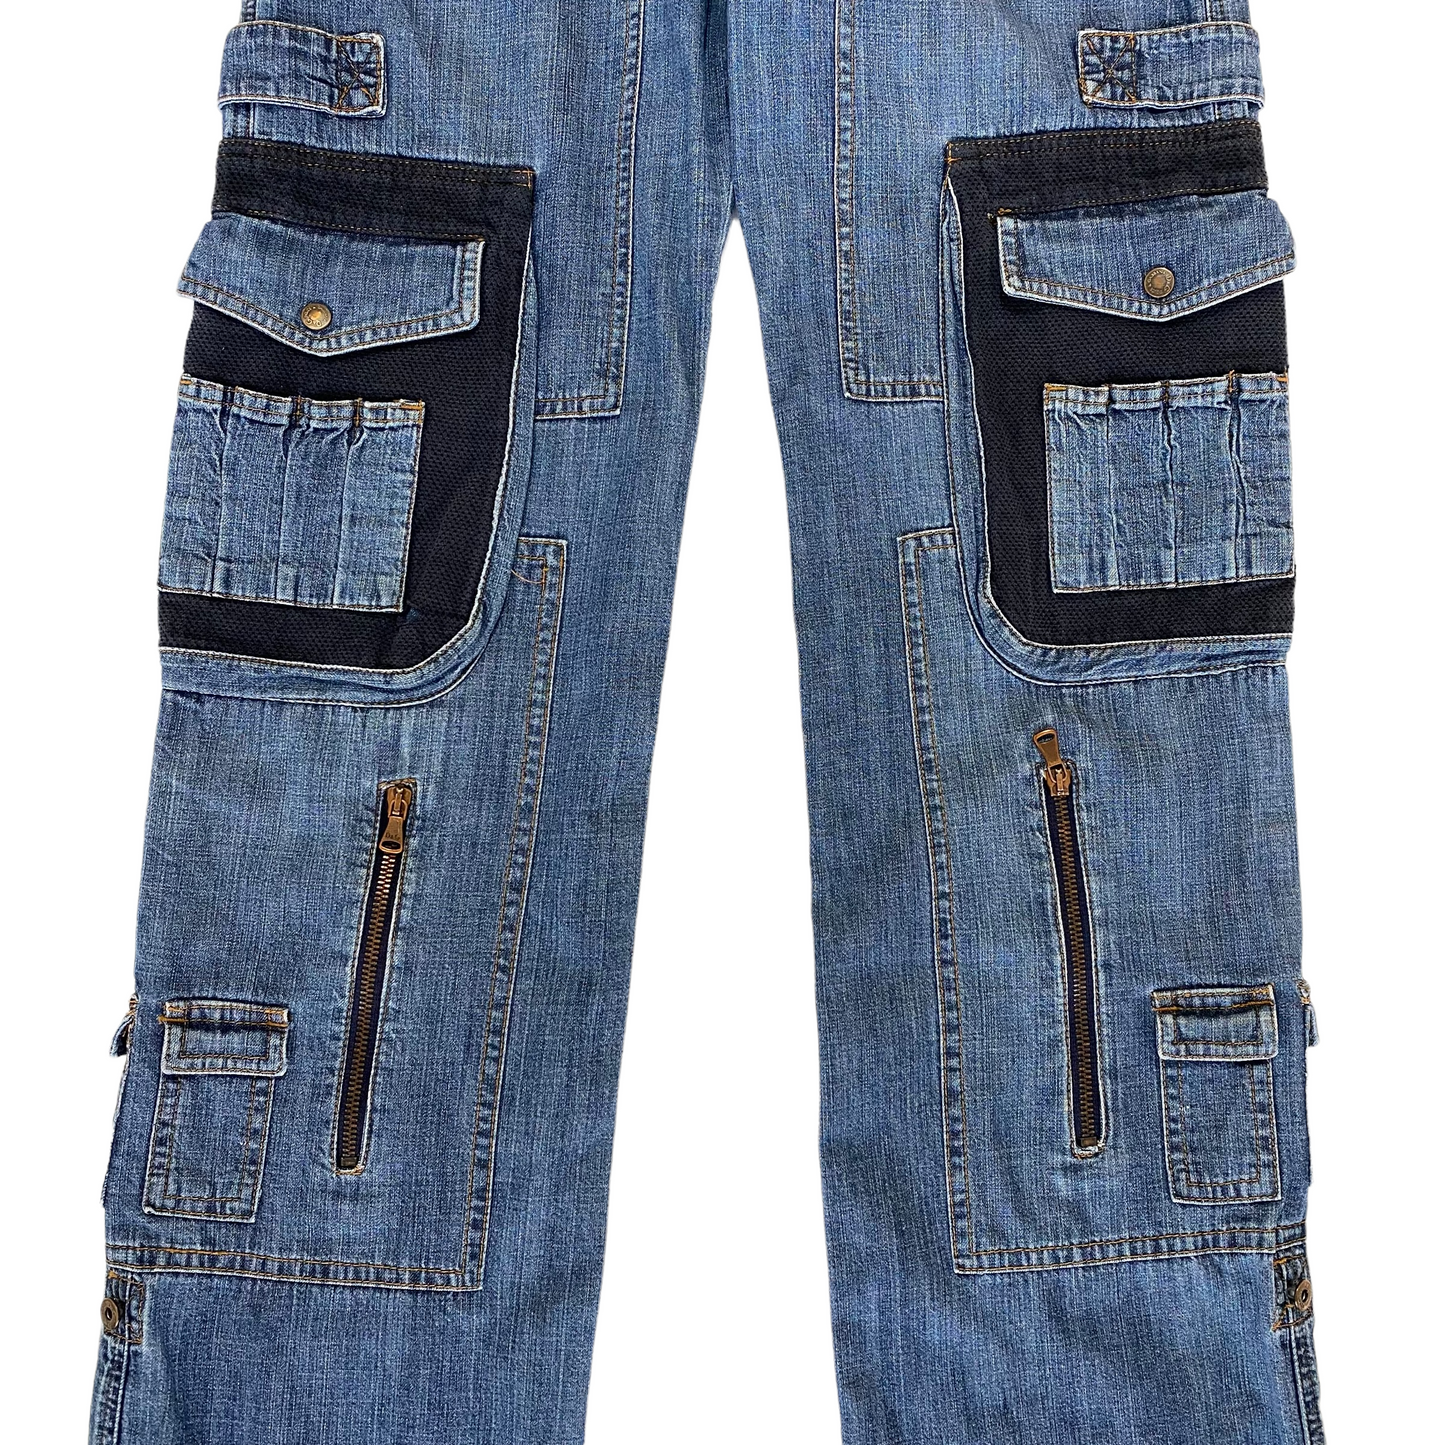 00's Dolce & Gabbana Cargo Jeans (37W)